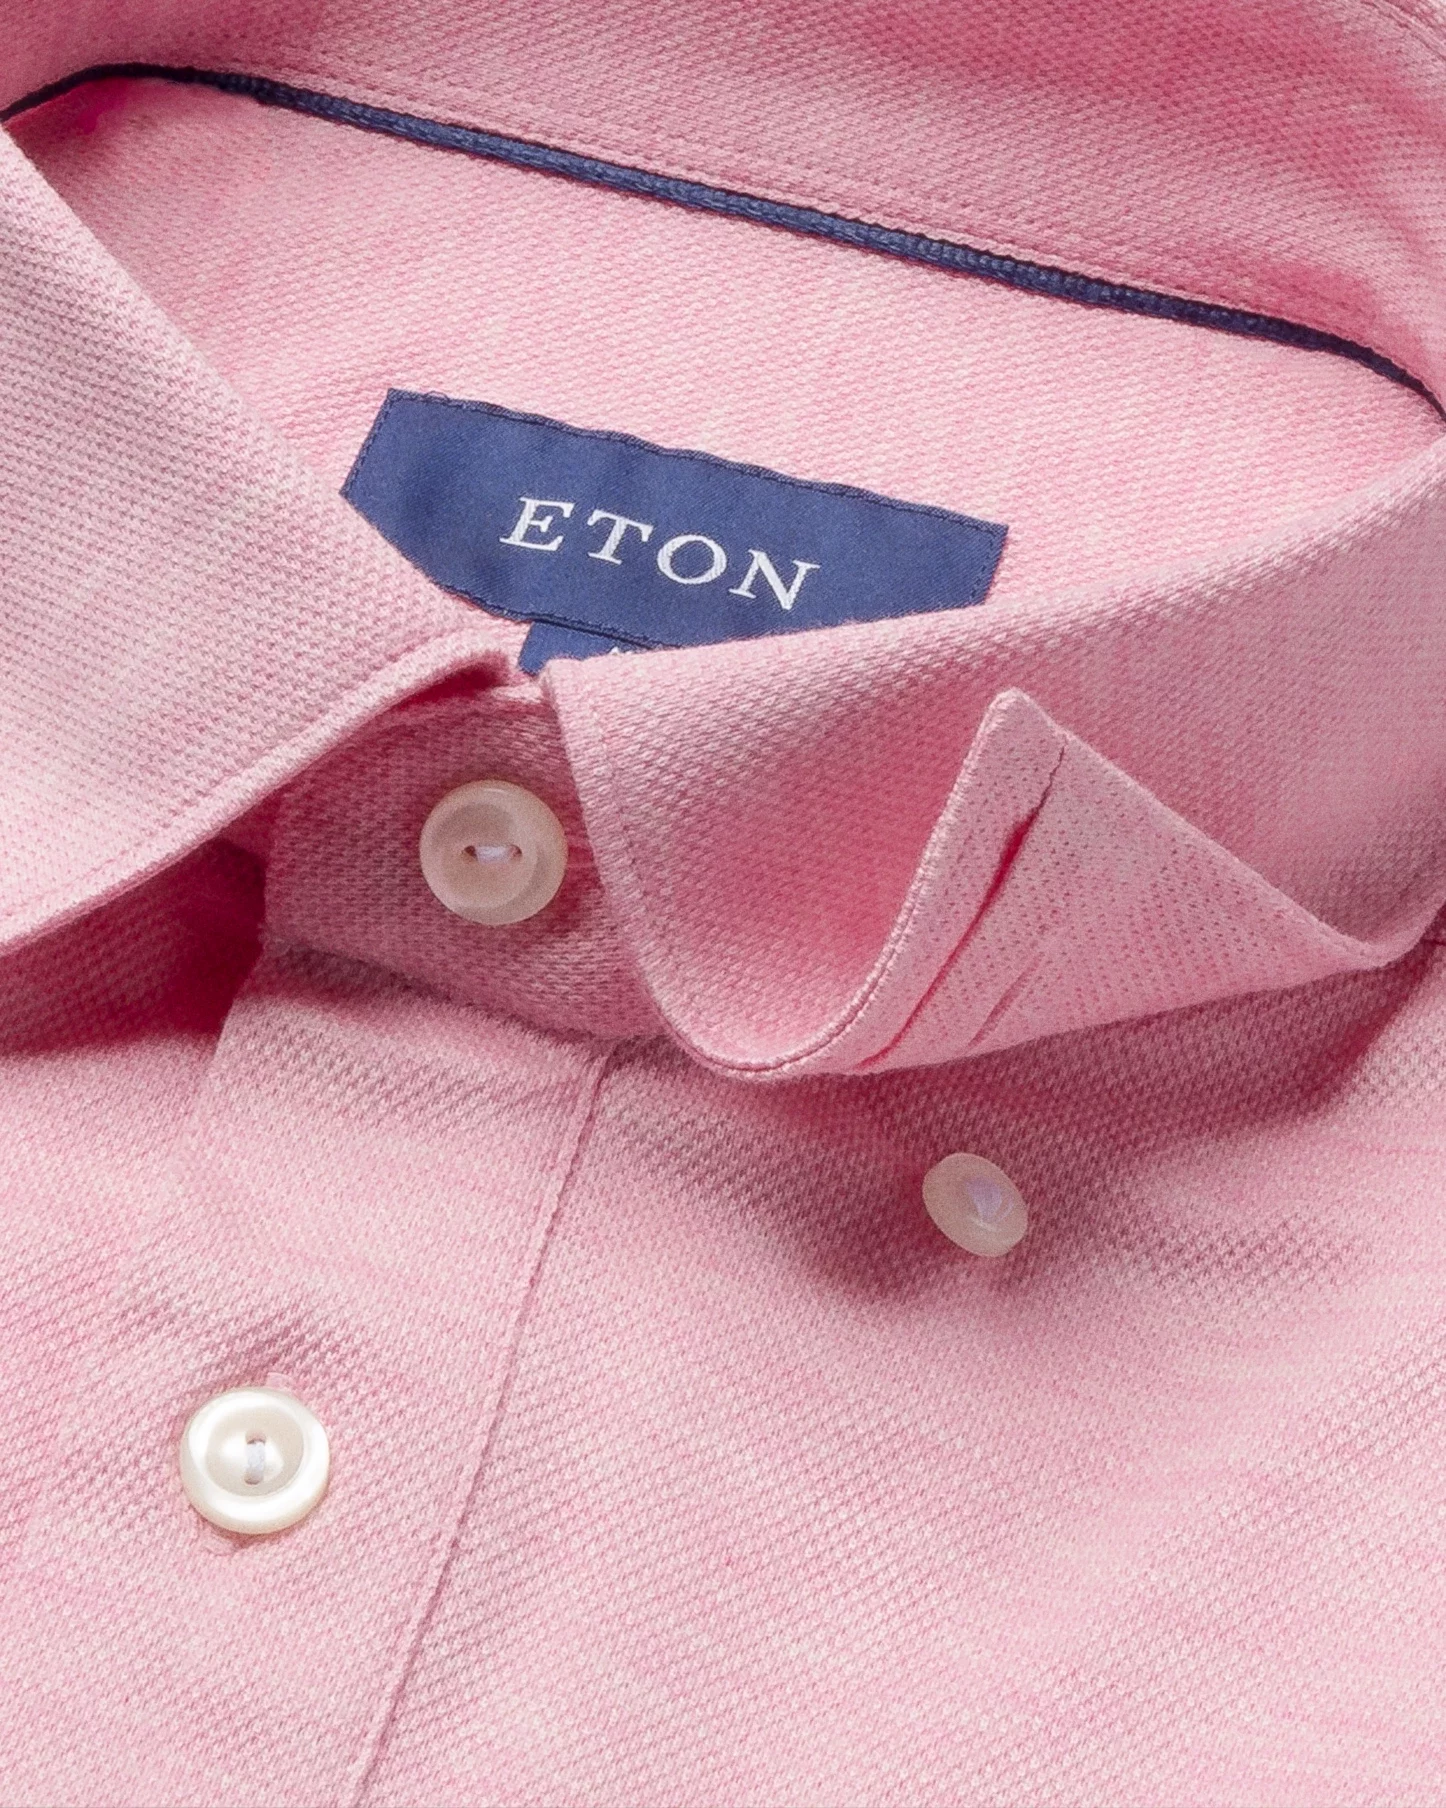 Eton - pinkred pique